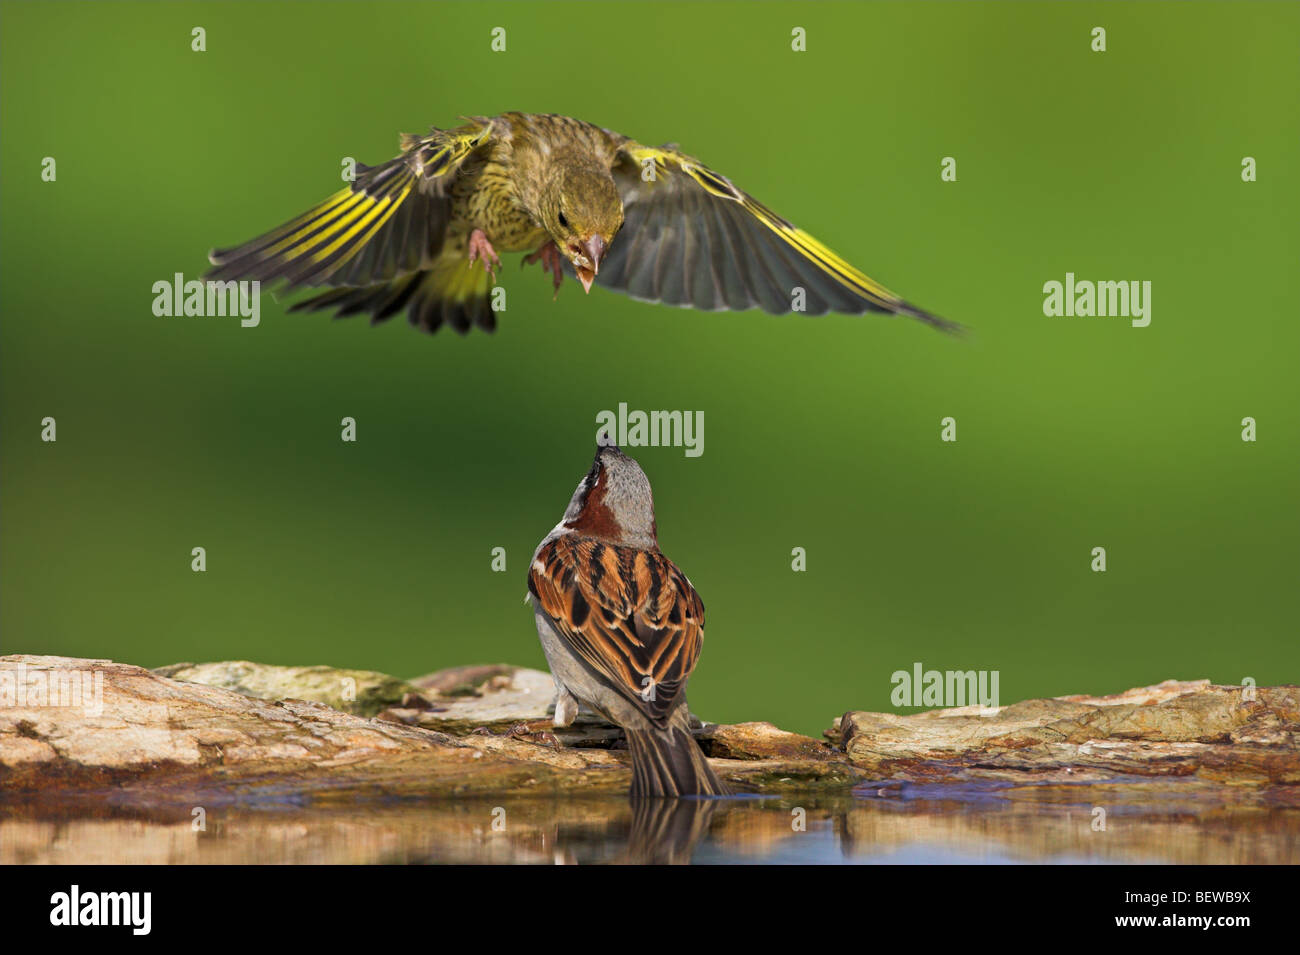 Verderón europeo (Carduelis chloris) atacando gorriones (Passer) desde el aire, close-up Foto de stock